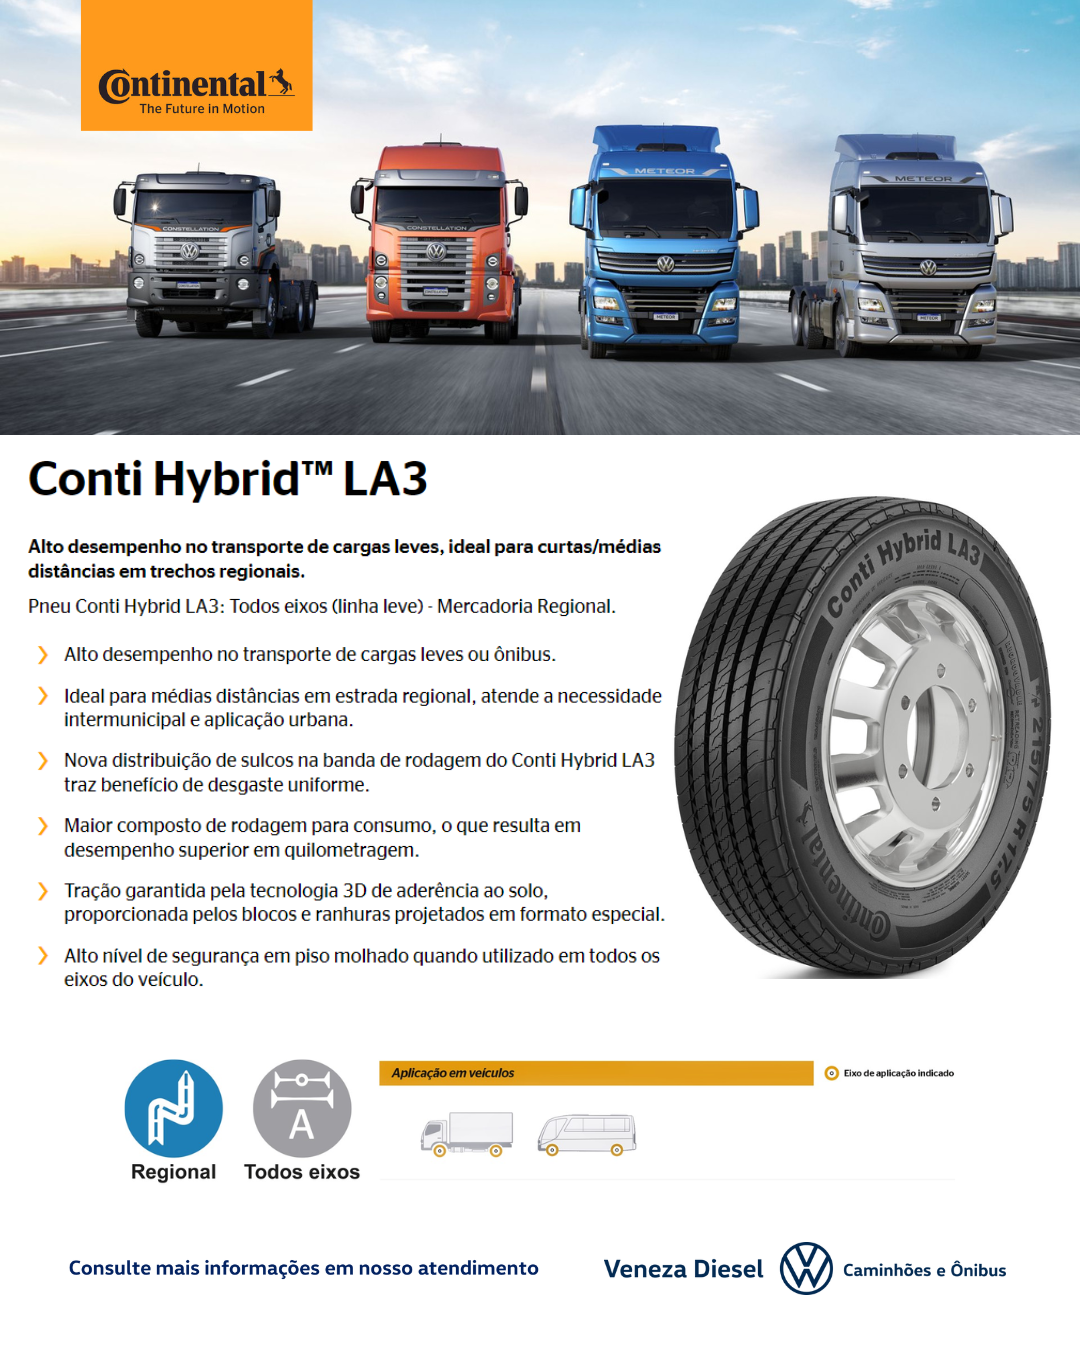 Conti Hybrid LA3